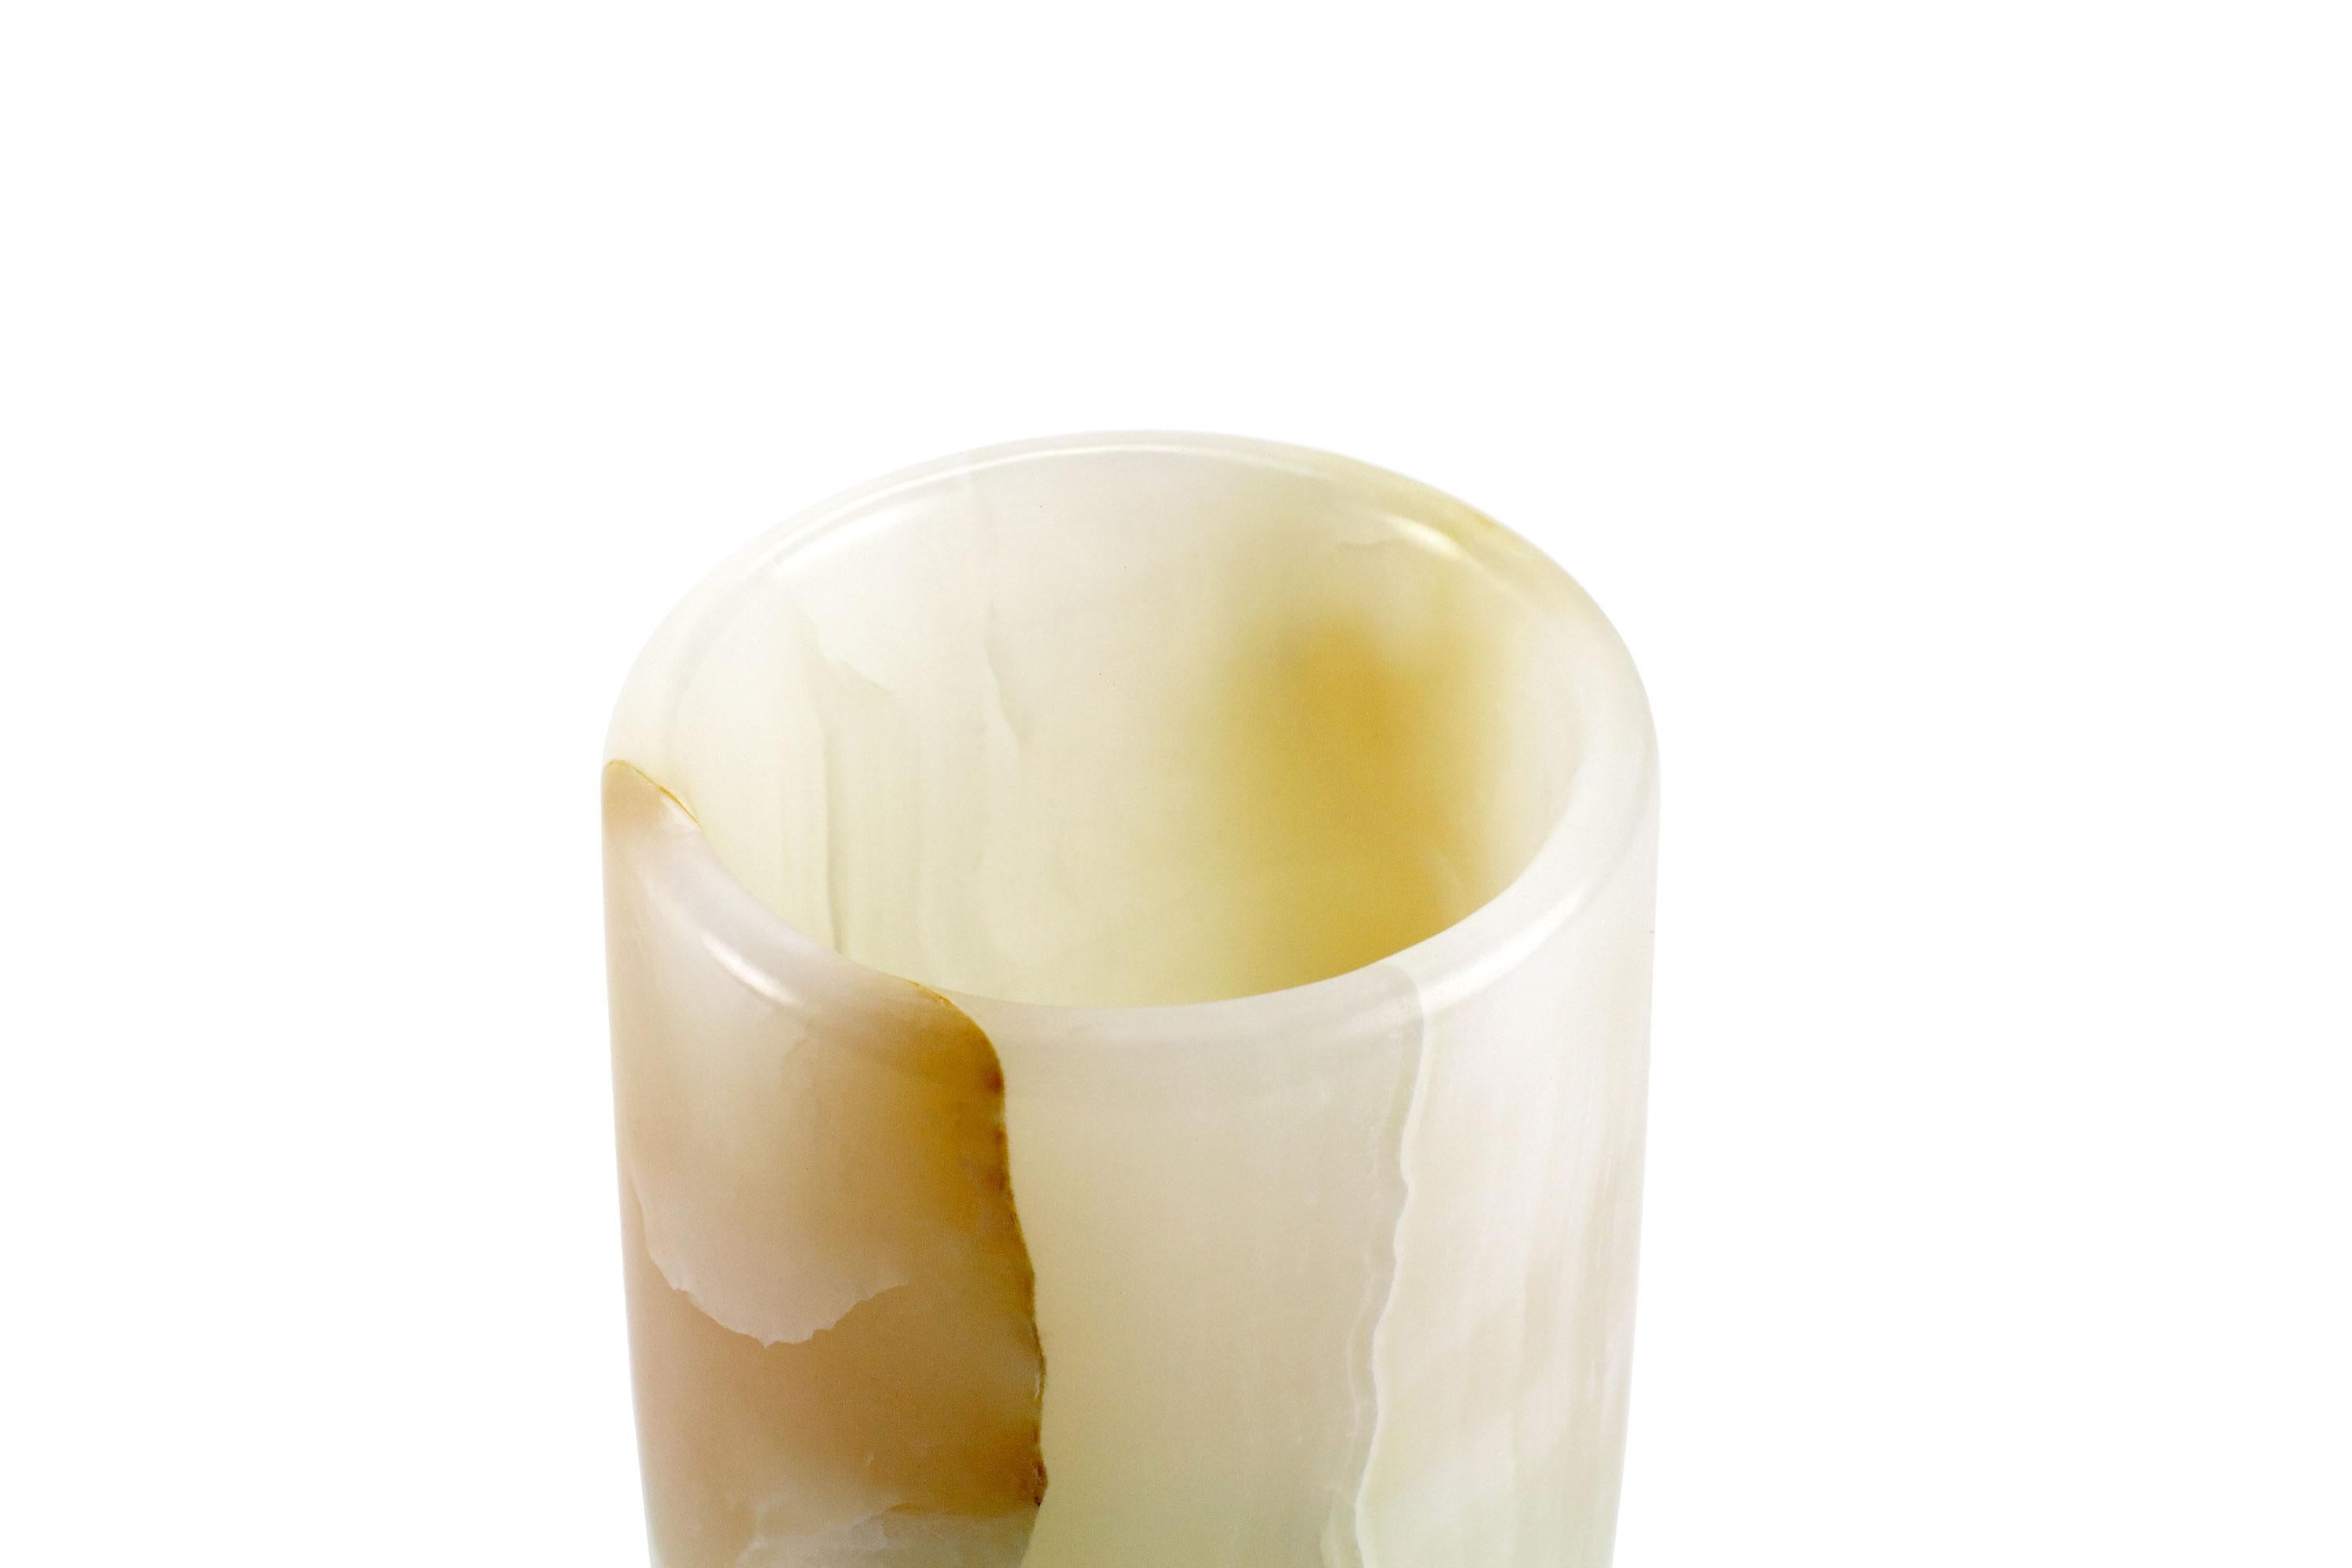 white onyx vase